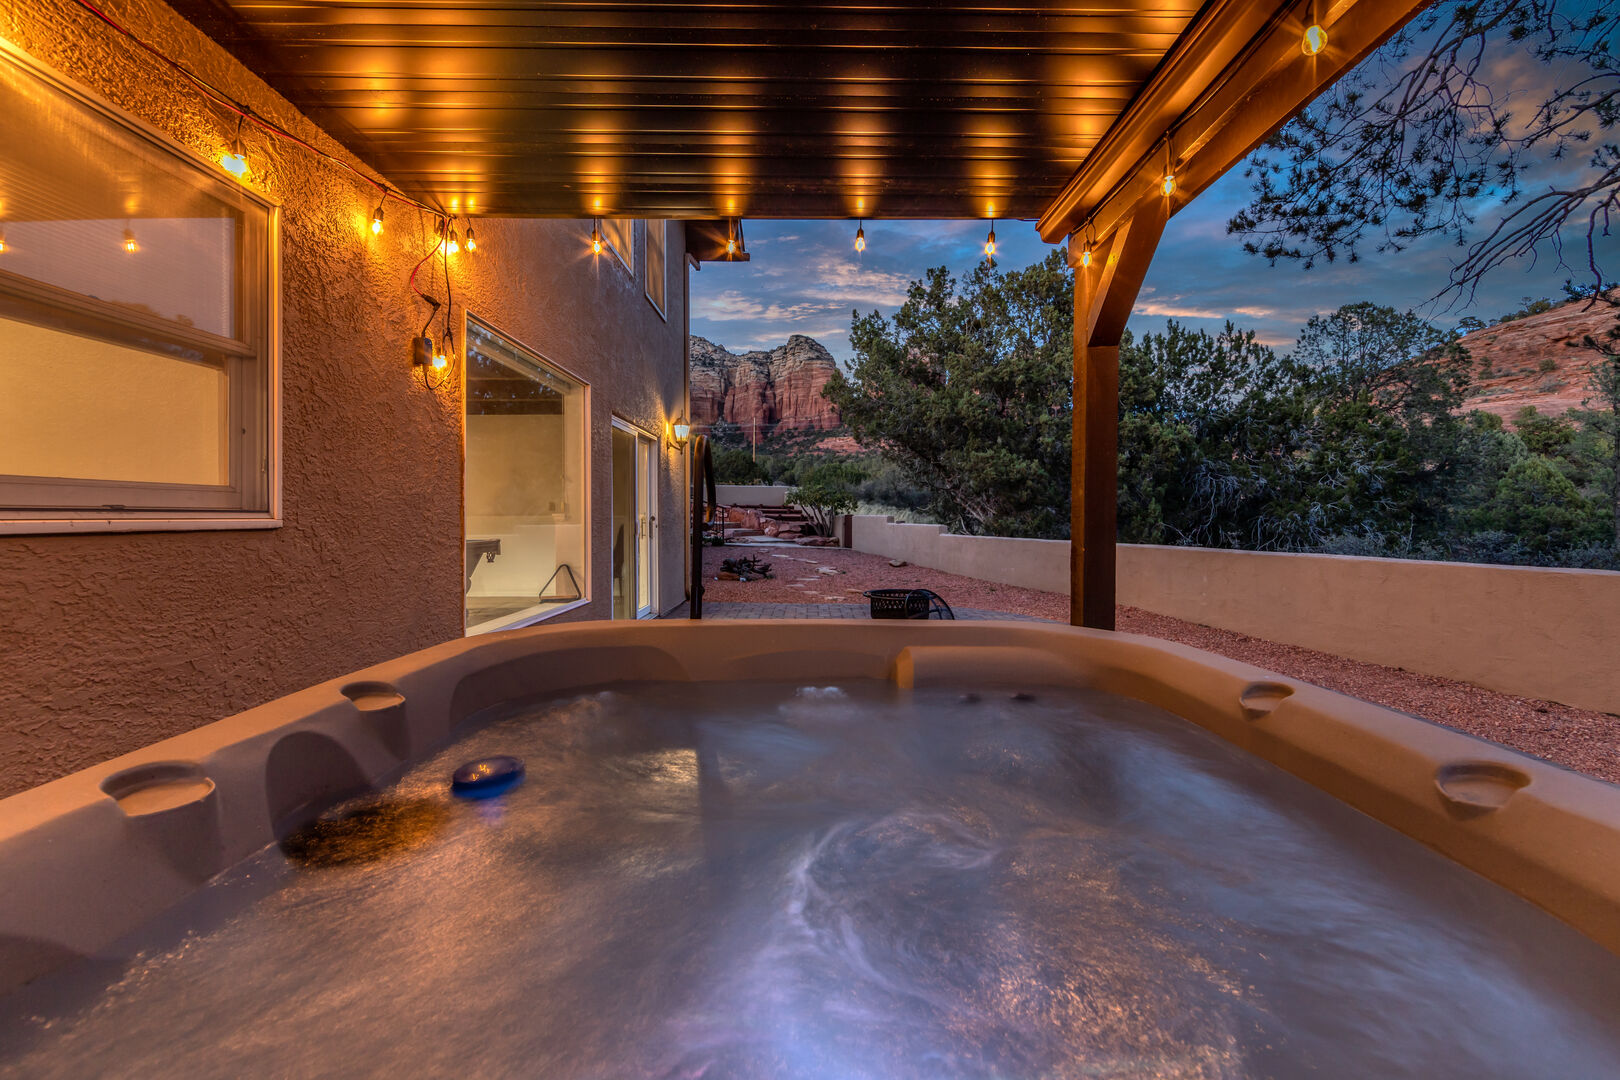 Enjoy The Hot Tub & Views at Sugarloaf House!